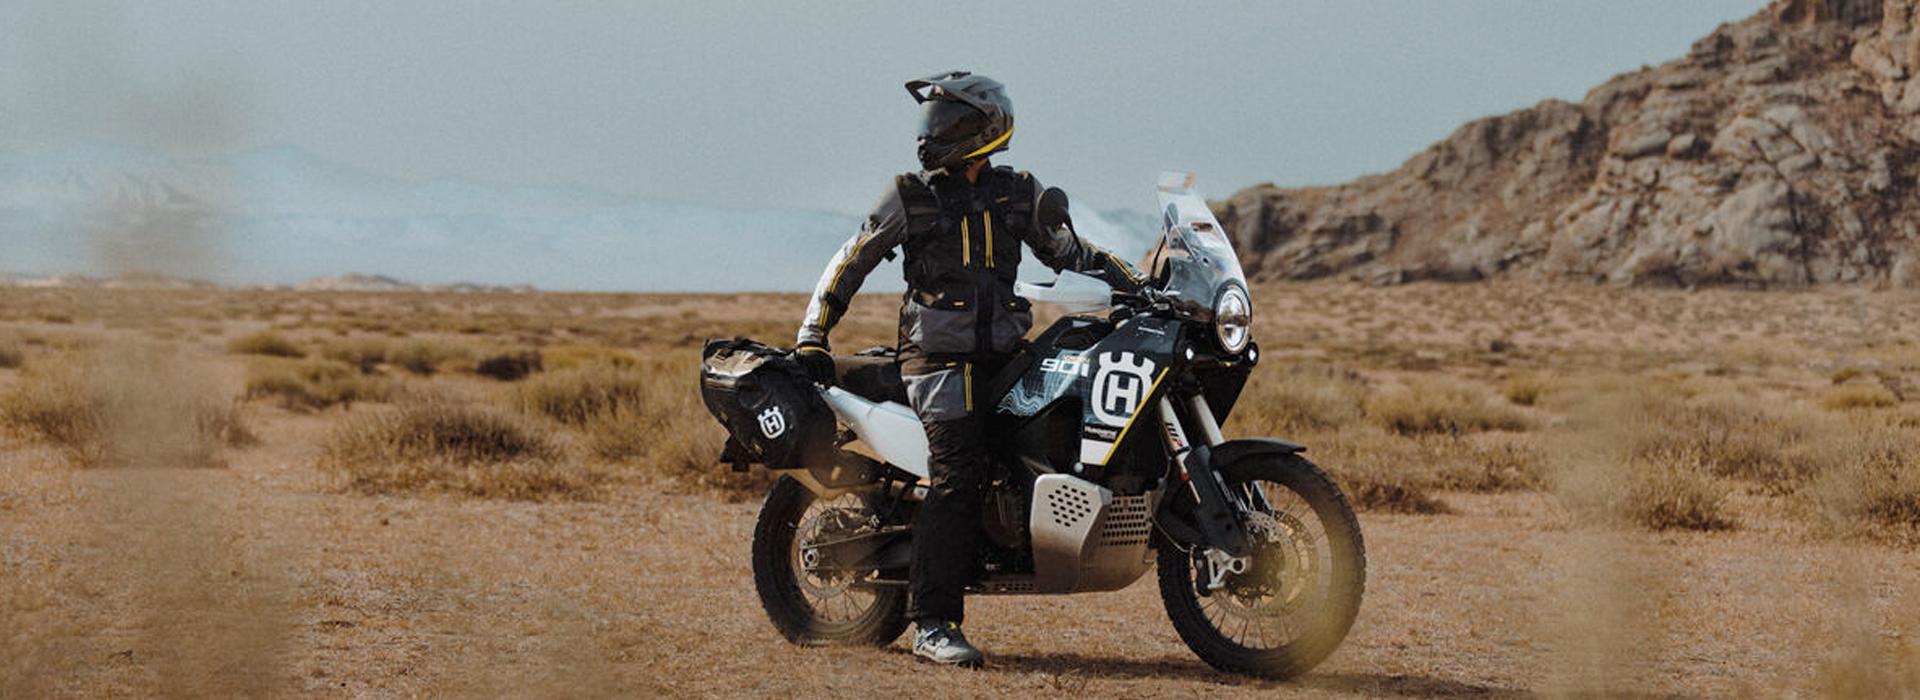 Husqvarna Norden 901 Expedition: La moto ideal para viajes largos y recorrer los terrenos más desafiantes con estilo